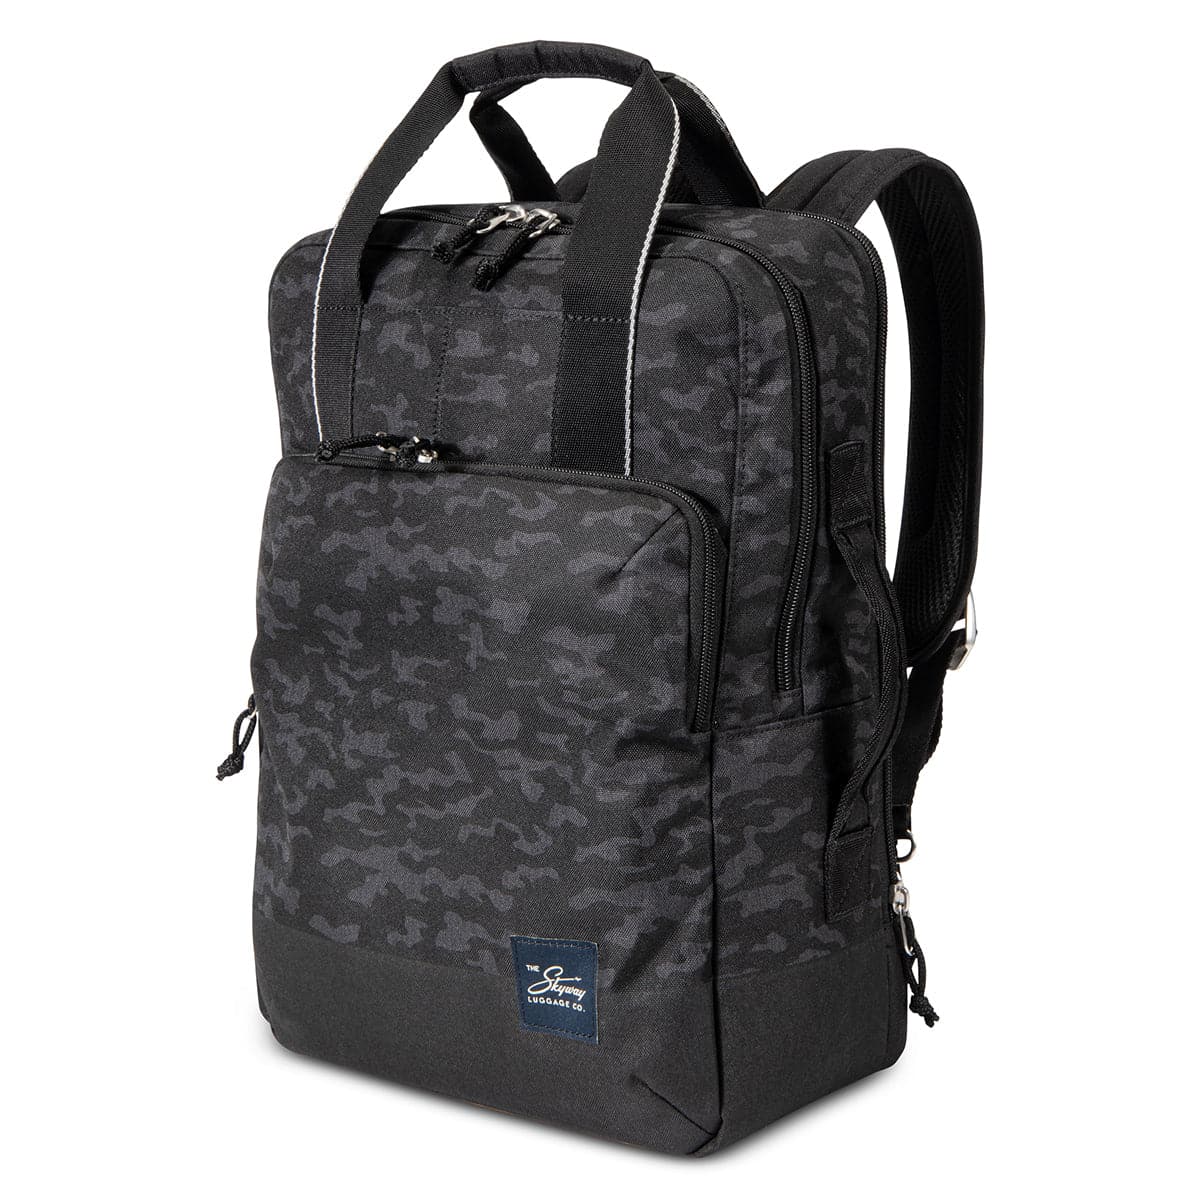 Skyway Rainier Deluxe Backpack - 17L